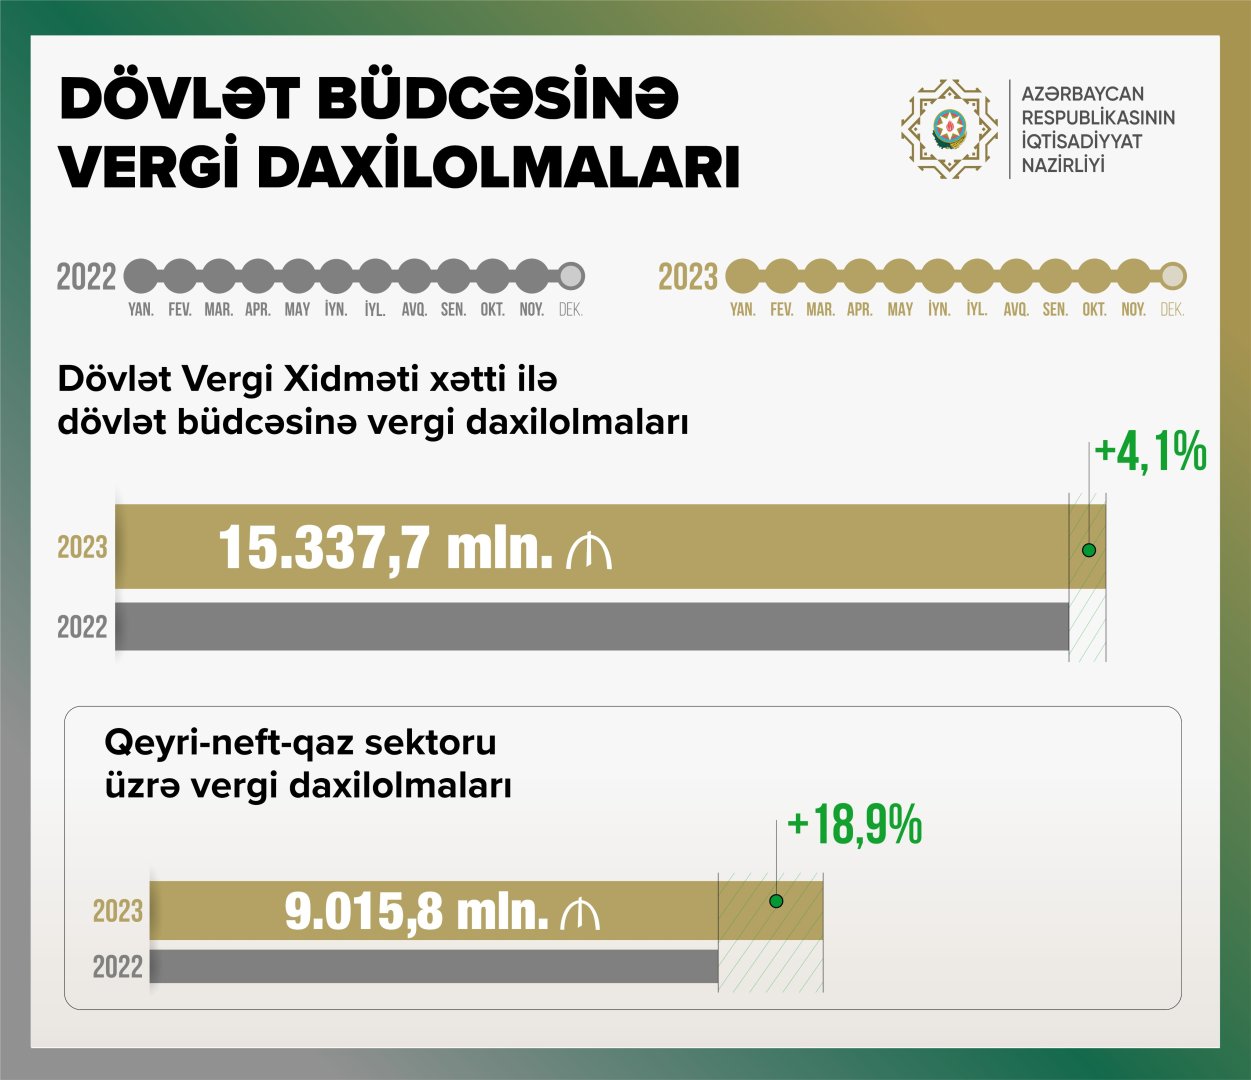 Налоговые поступления в госбюджет Азербайджана существенно выросли - Микаил Джаббаров (ФОТО)